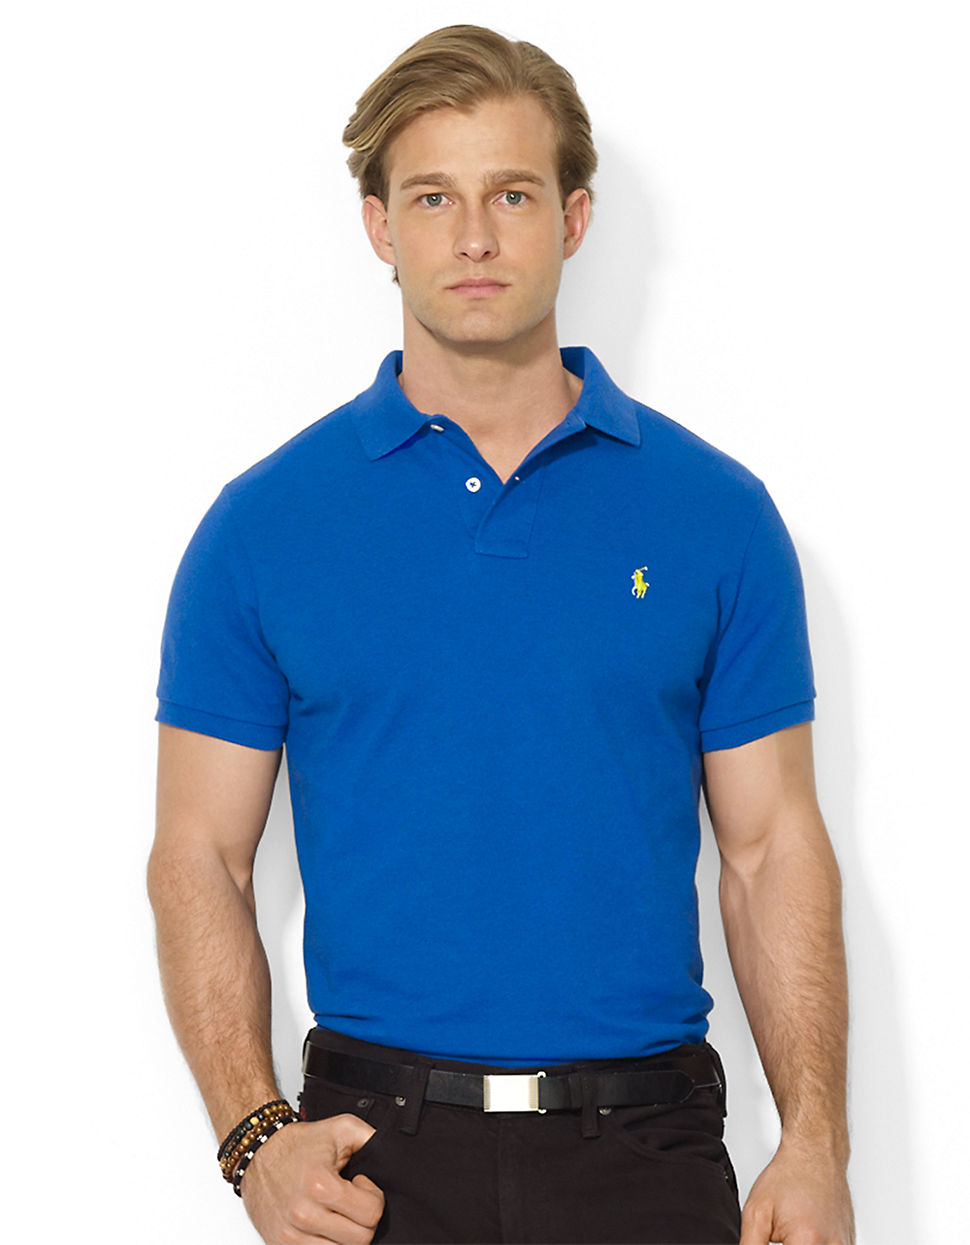 Lyst - Polo Ralph Lauren Custom-Fit Mesh Polo Shirt in Blue for Men